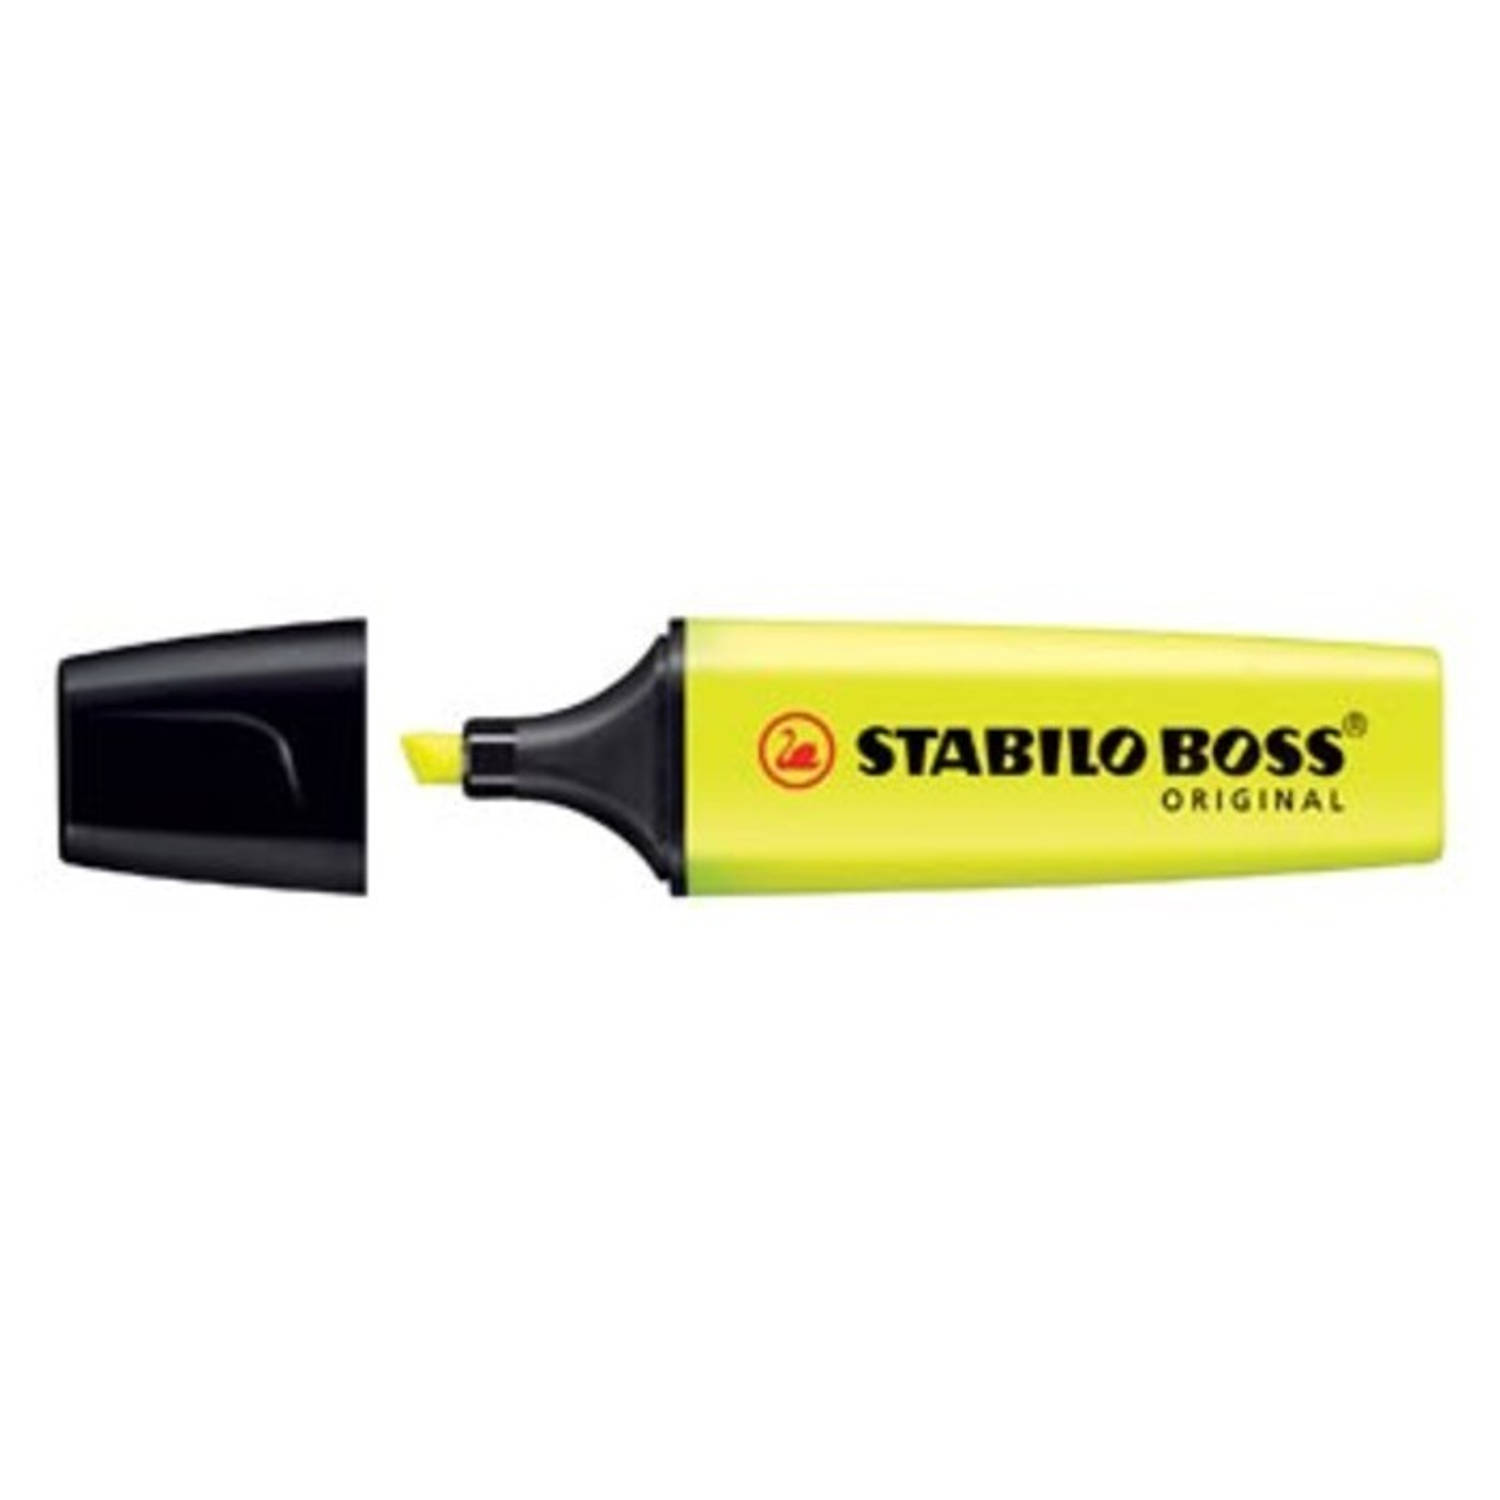 Markeerstift Stabilo Boss Original geel